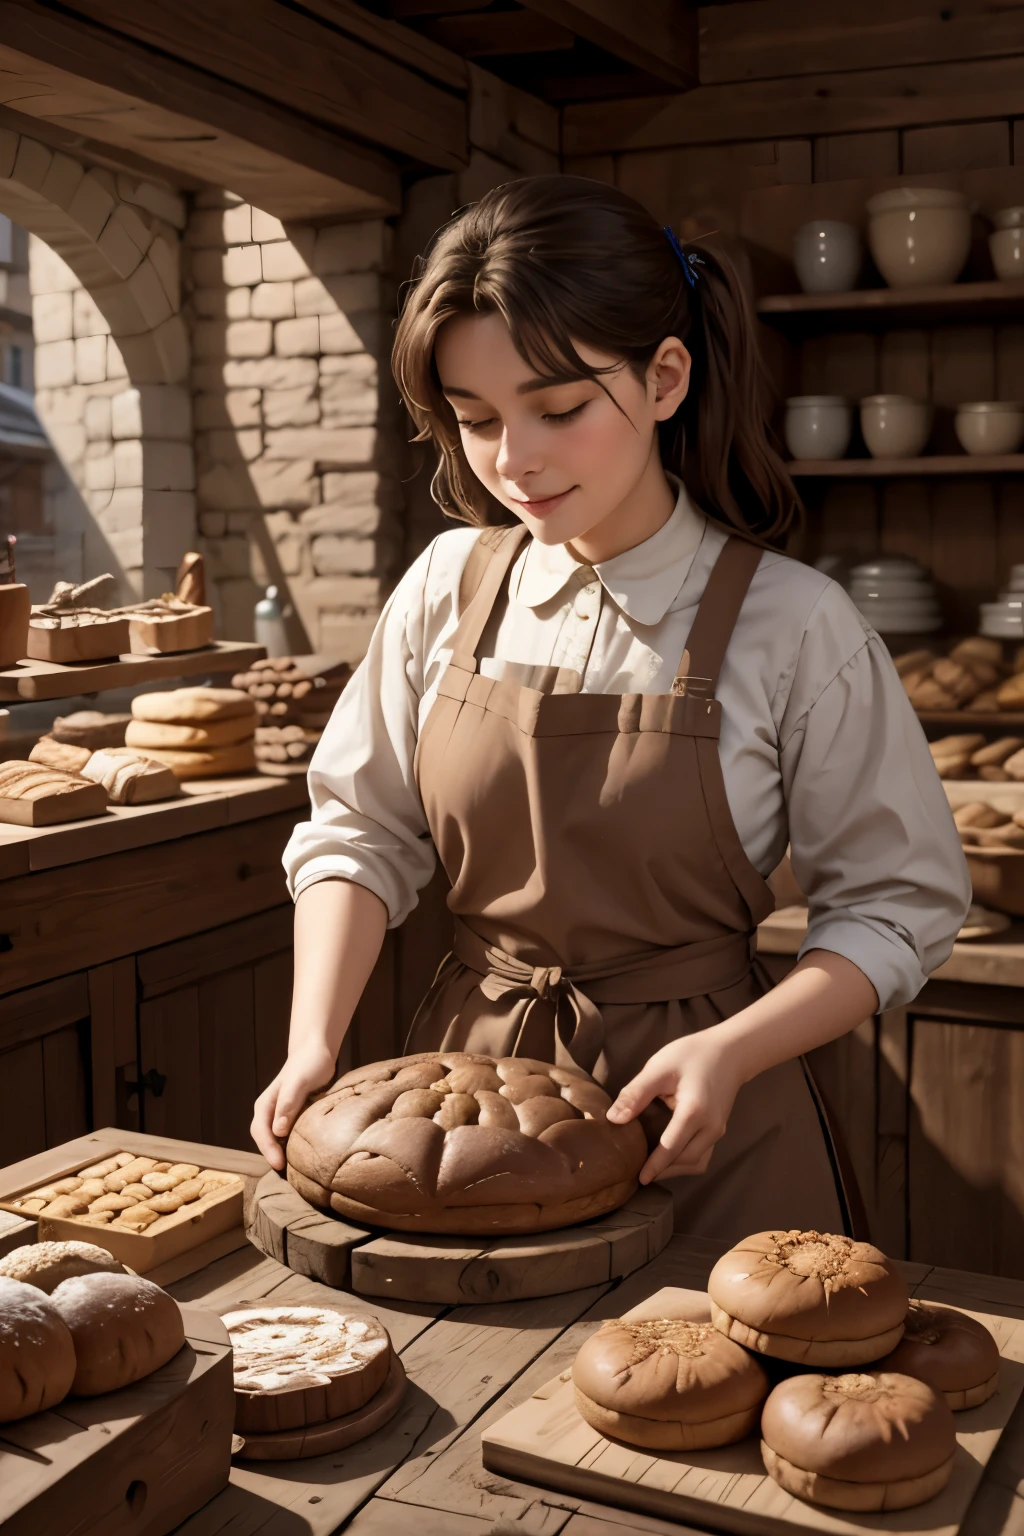 最好的质量, 杰作,中世纪早期某城市的一家面包店